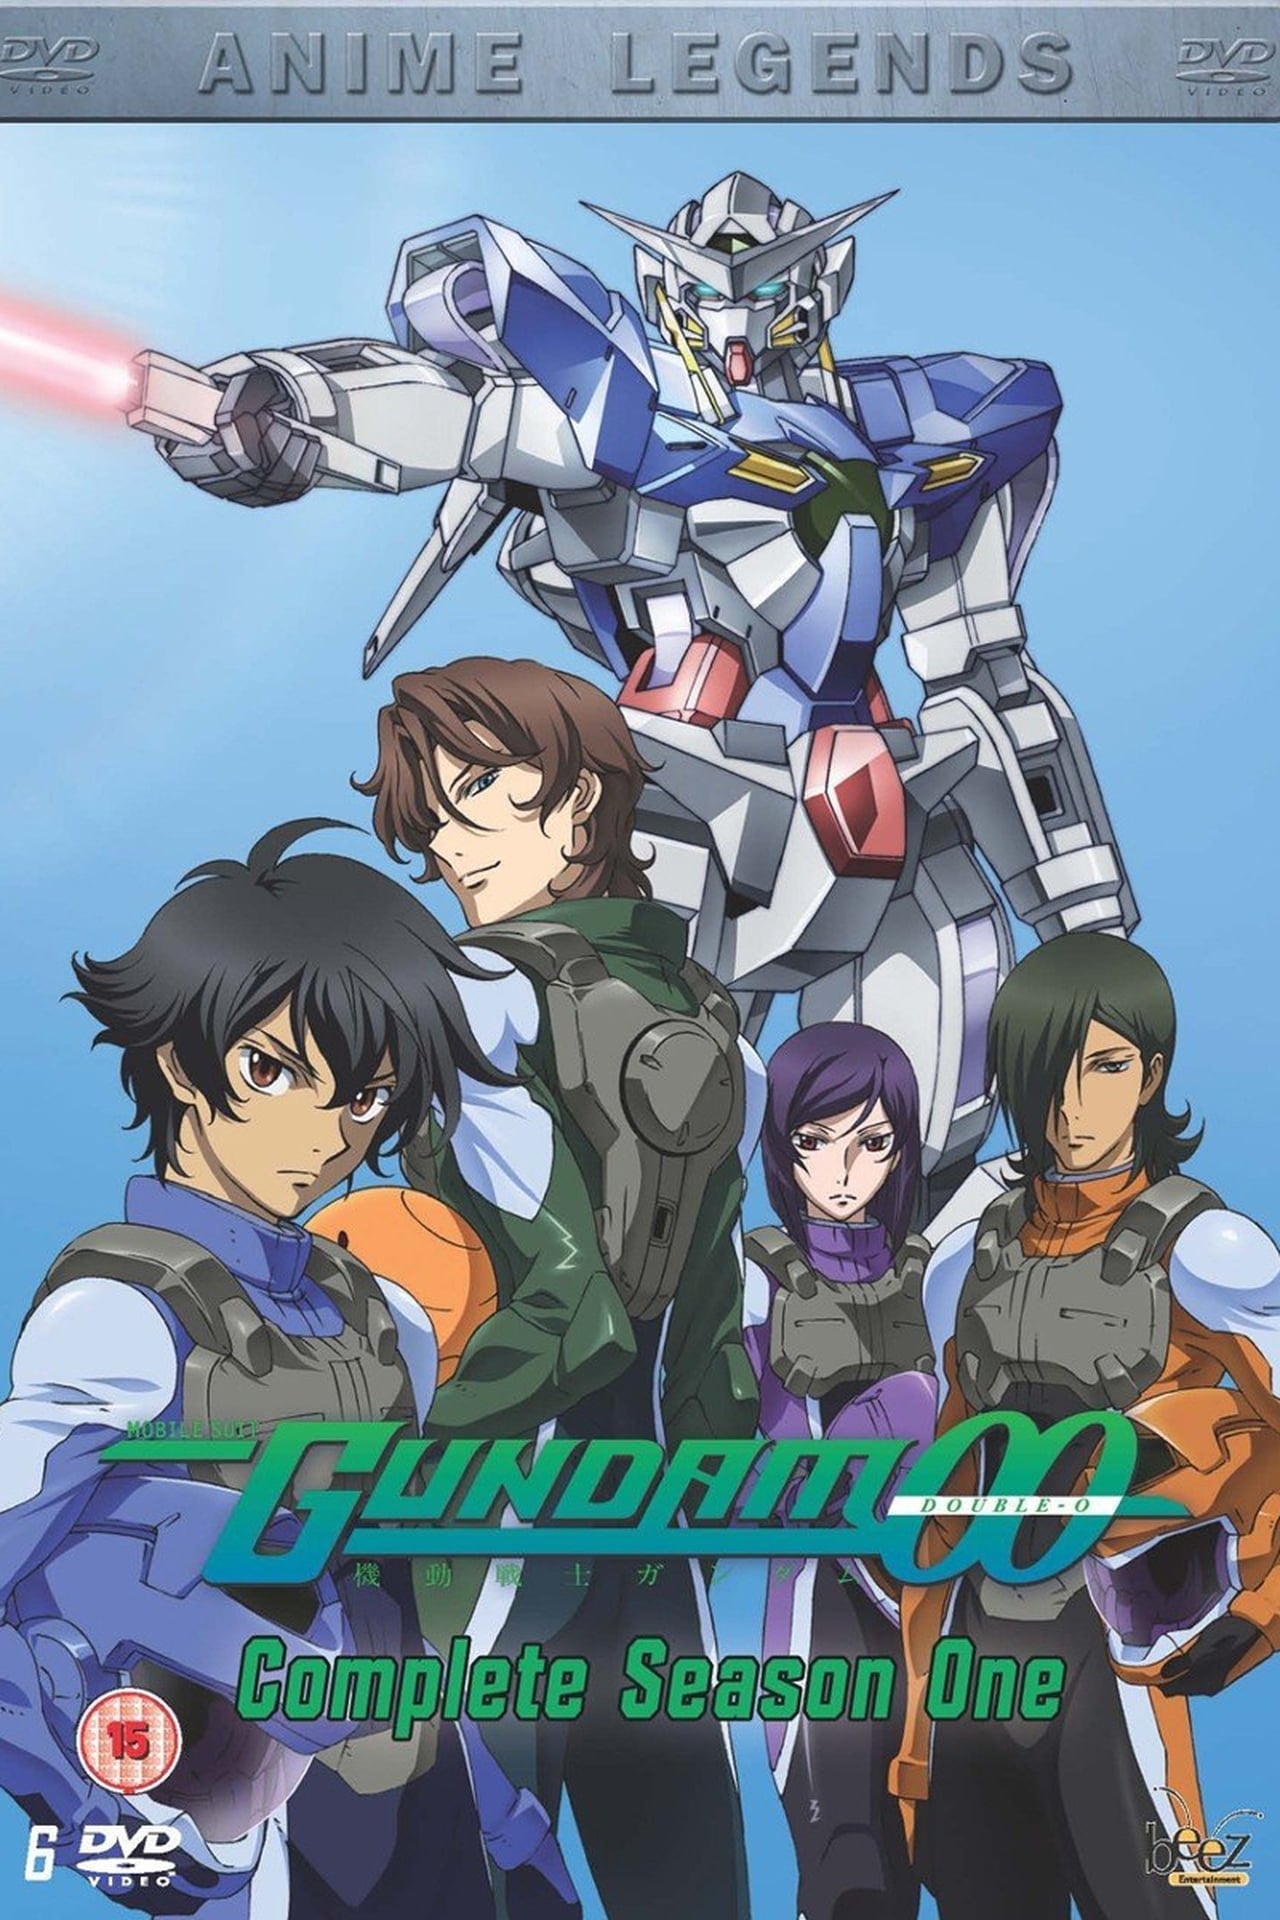 Mobile Suit Gundam 00 (2007)